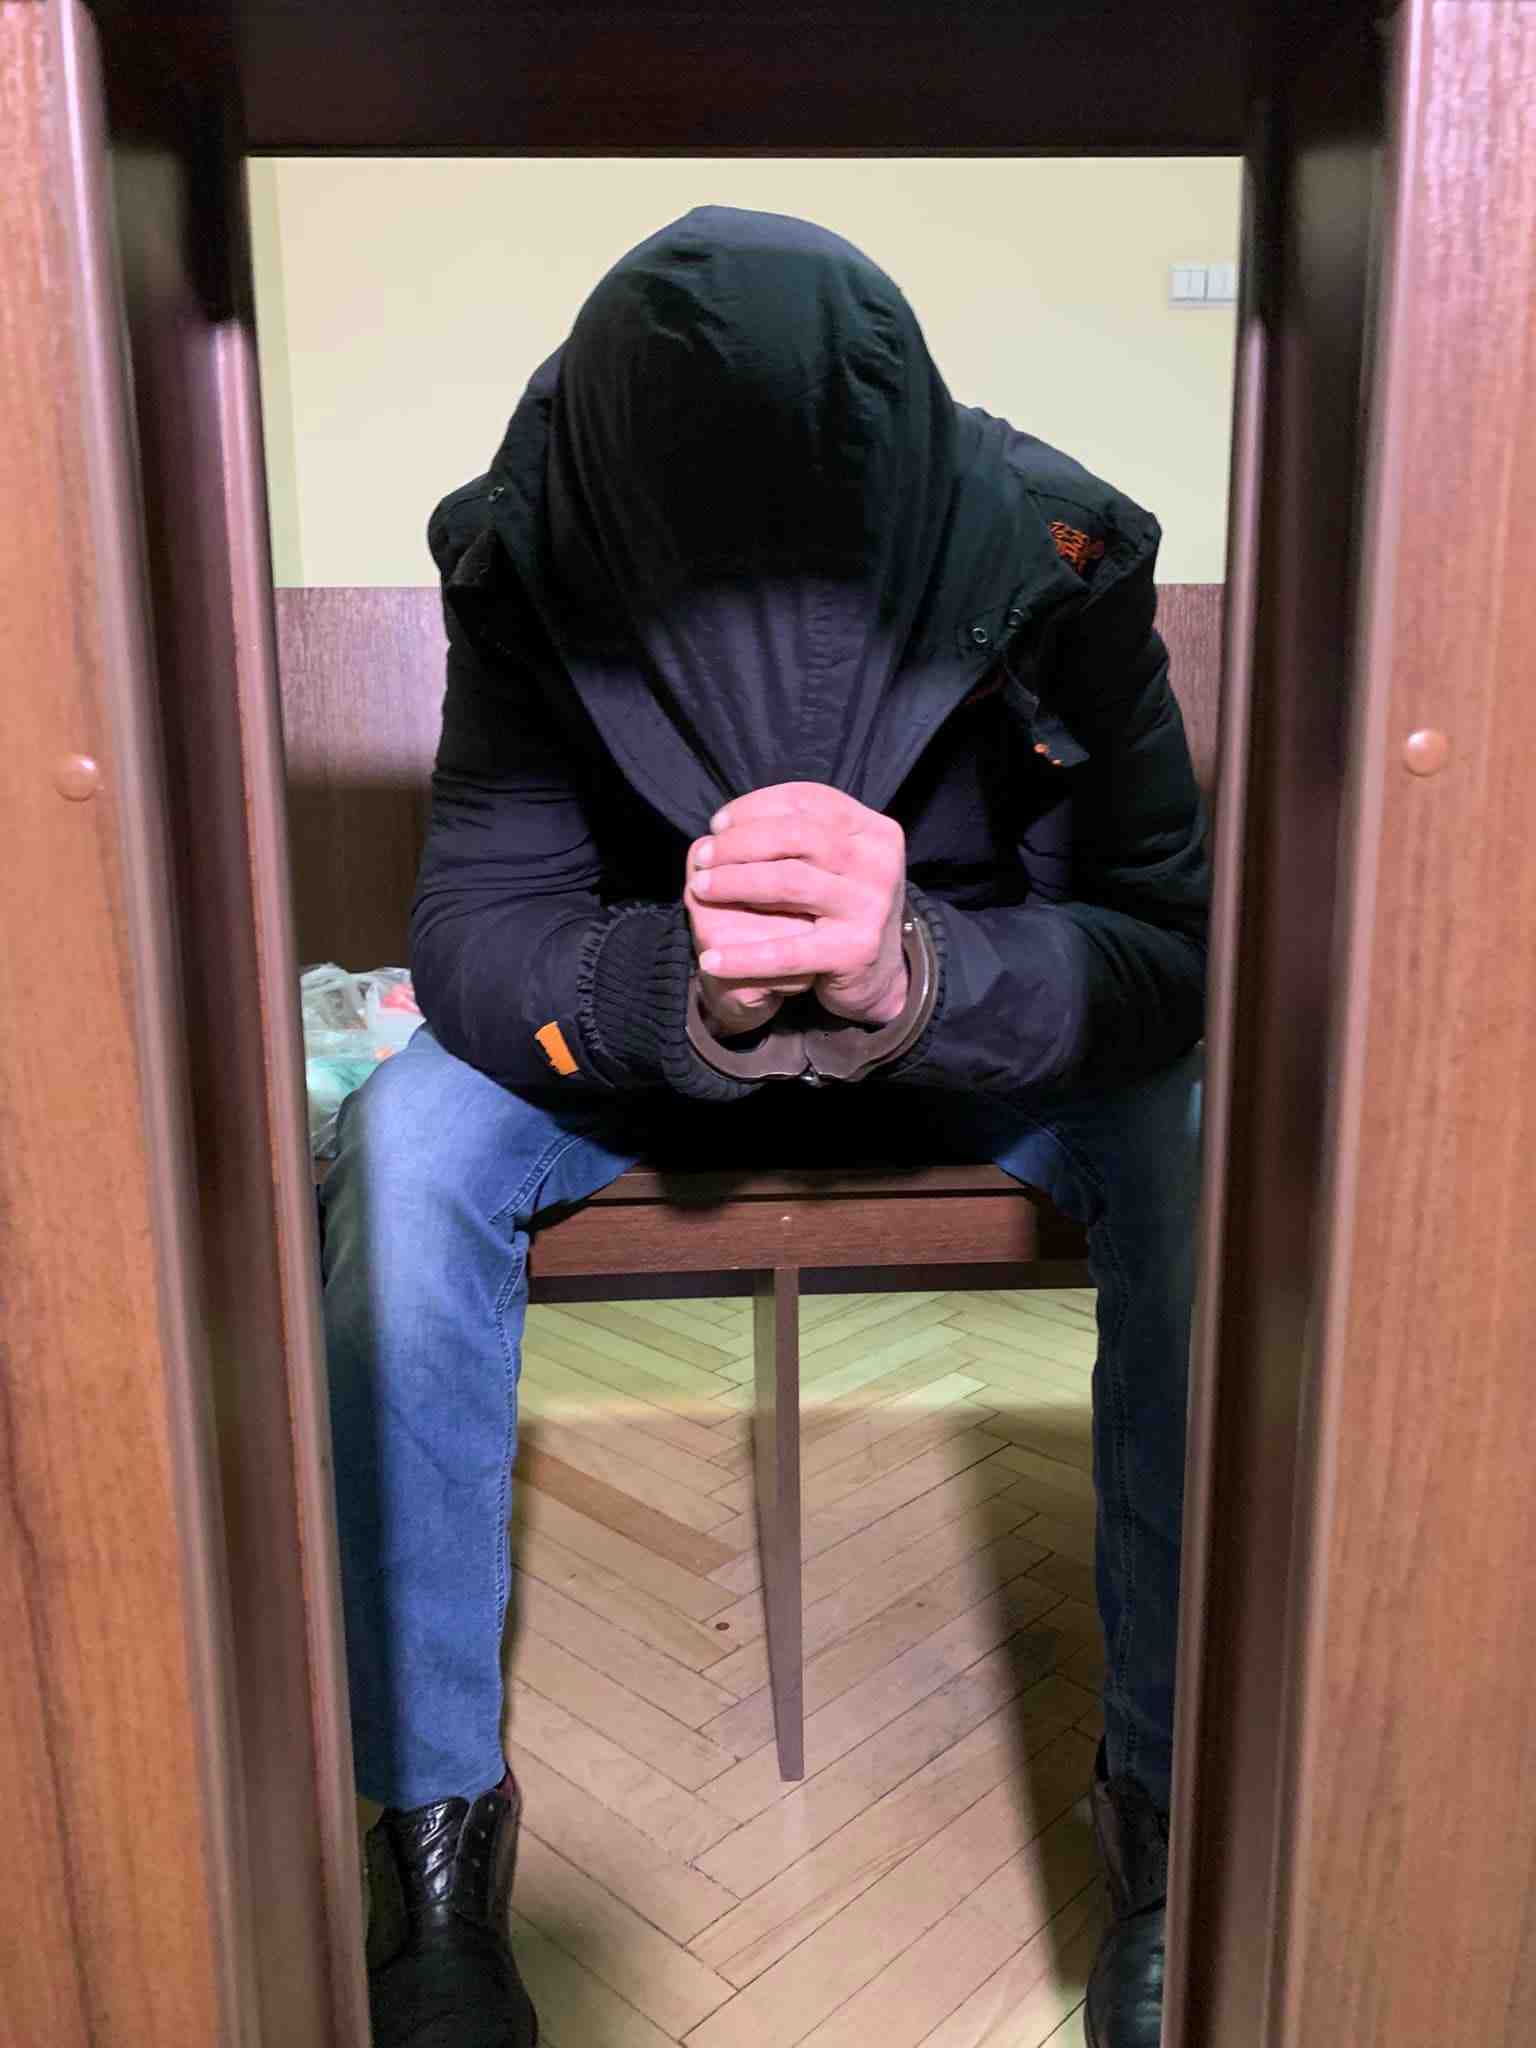 Львівський суд не зміг з першого разу обрати запобіжний захід підозрюваному у розбещенні дитини (ФОТО)